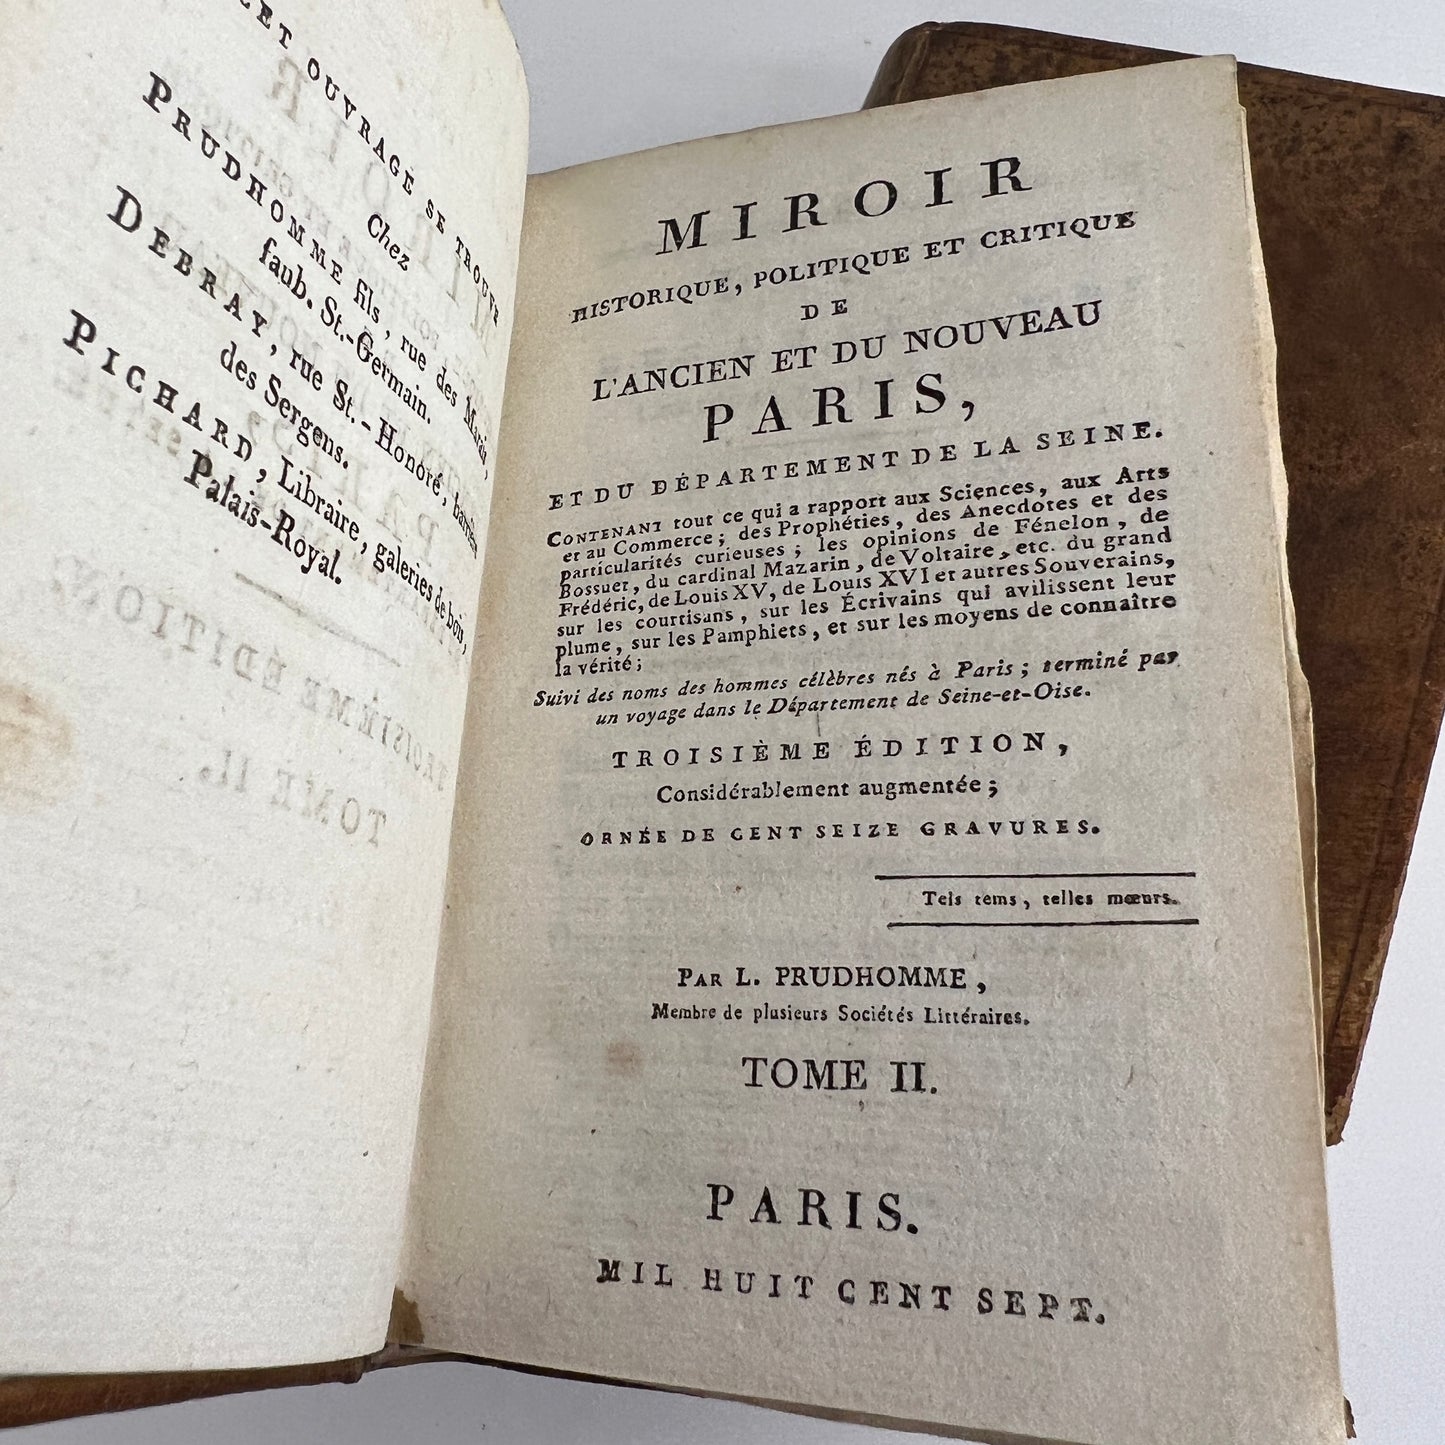 Miroir Historique, Politique et Critique de L'ancien et du Nouveau Paris (2 Vol)